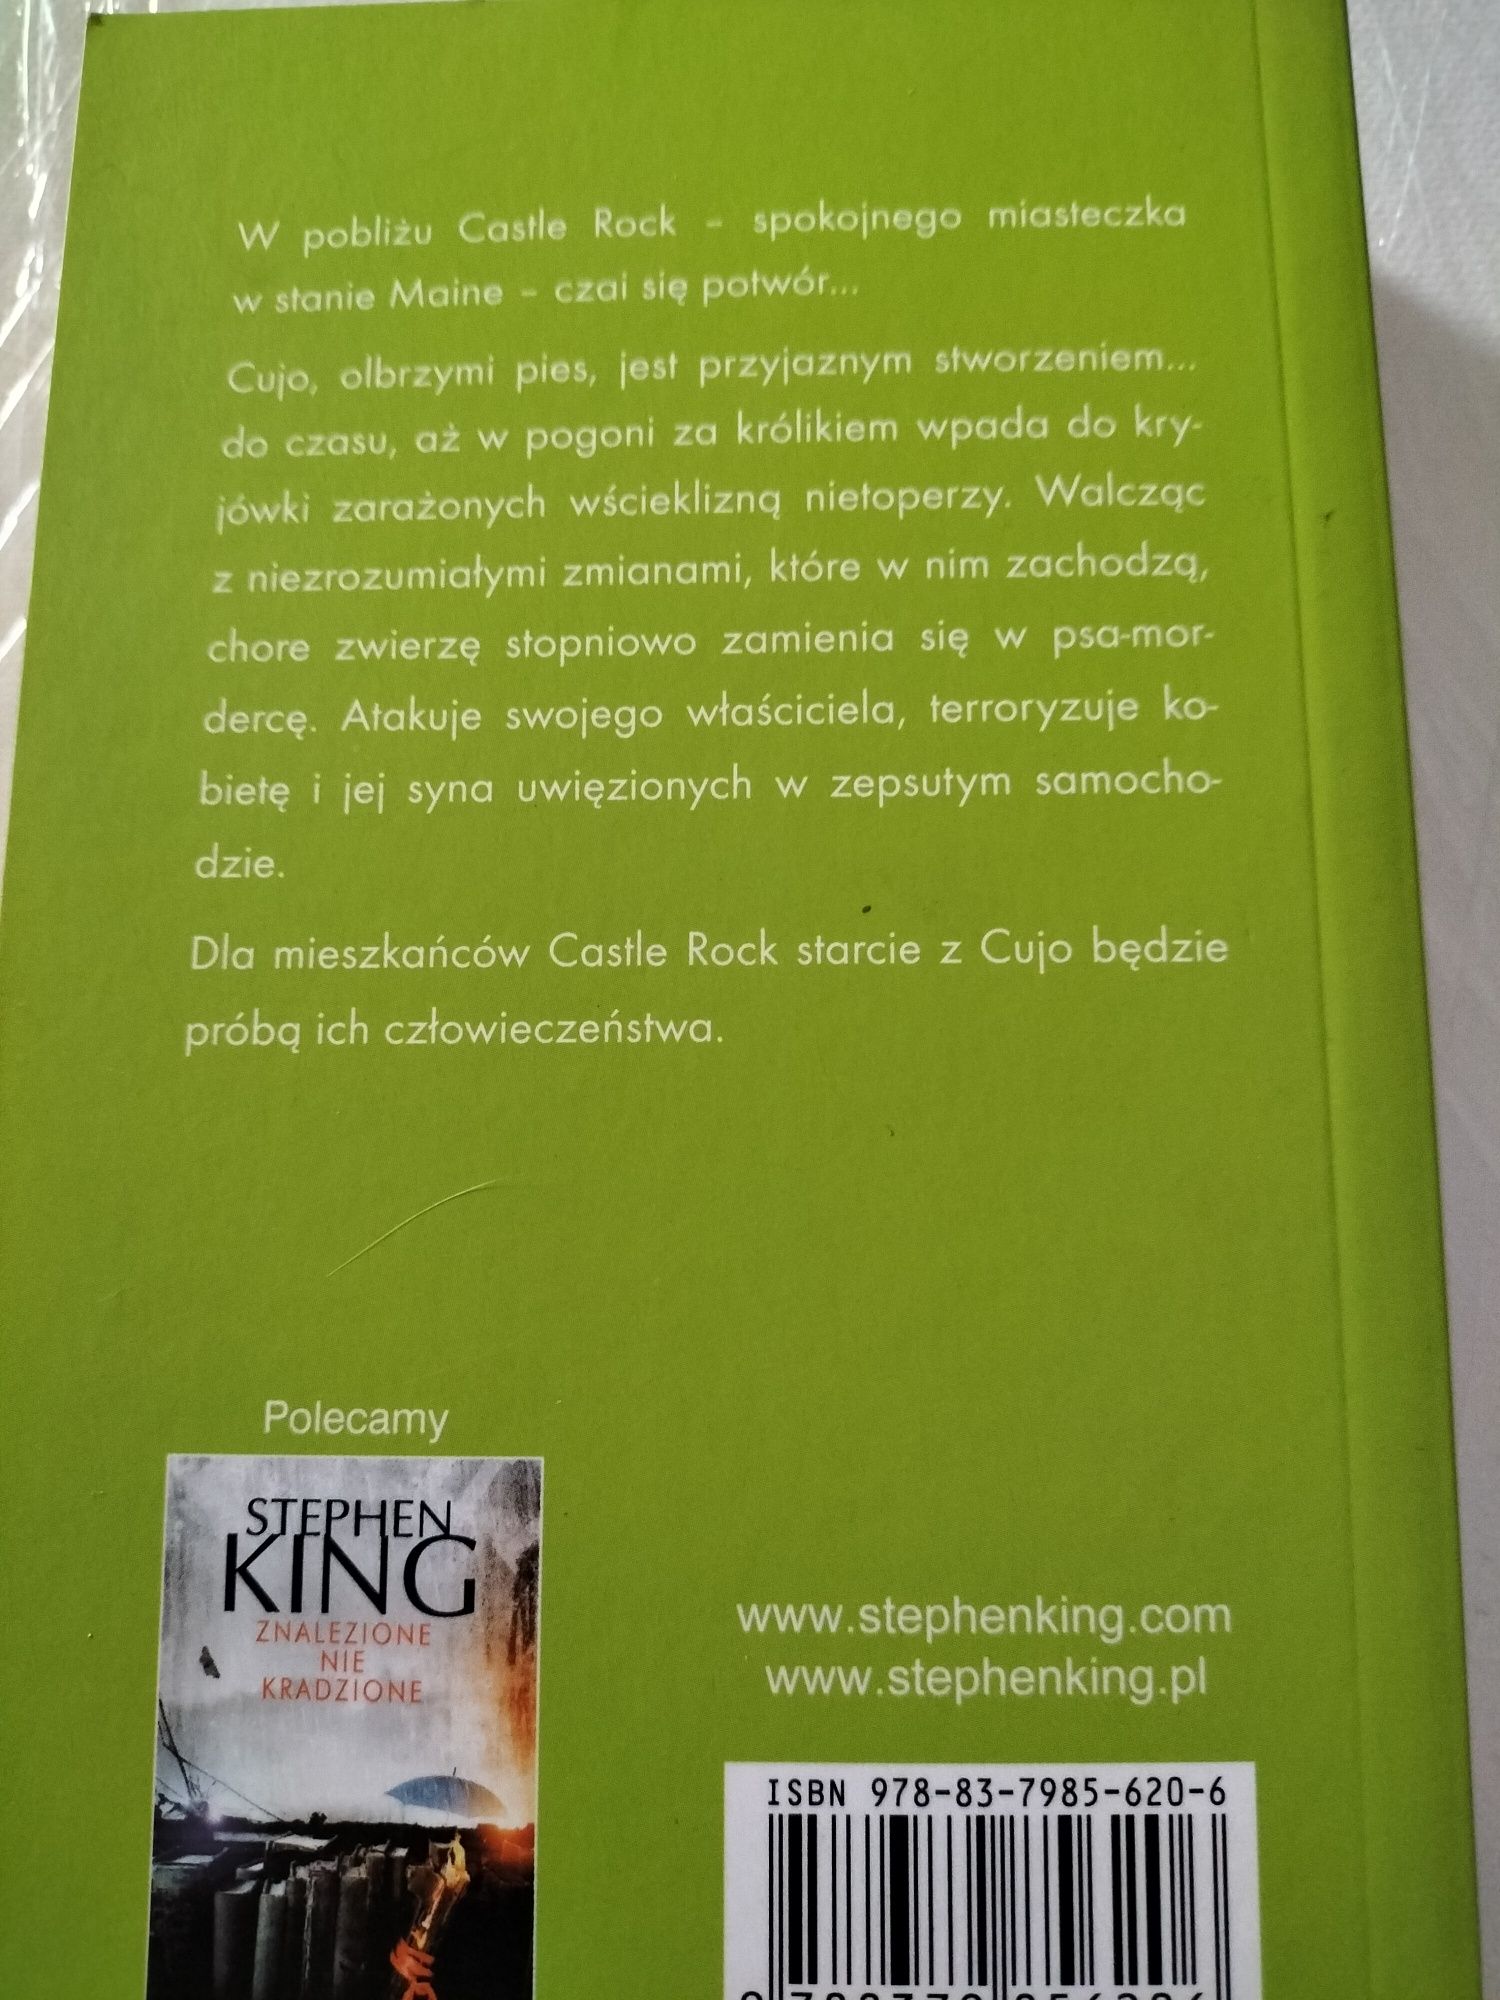 Książka Stephen King,CUJO